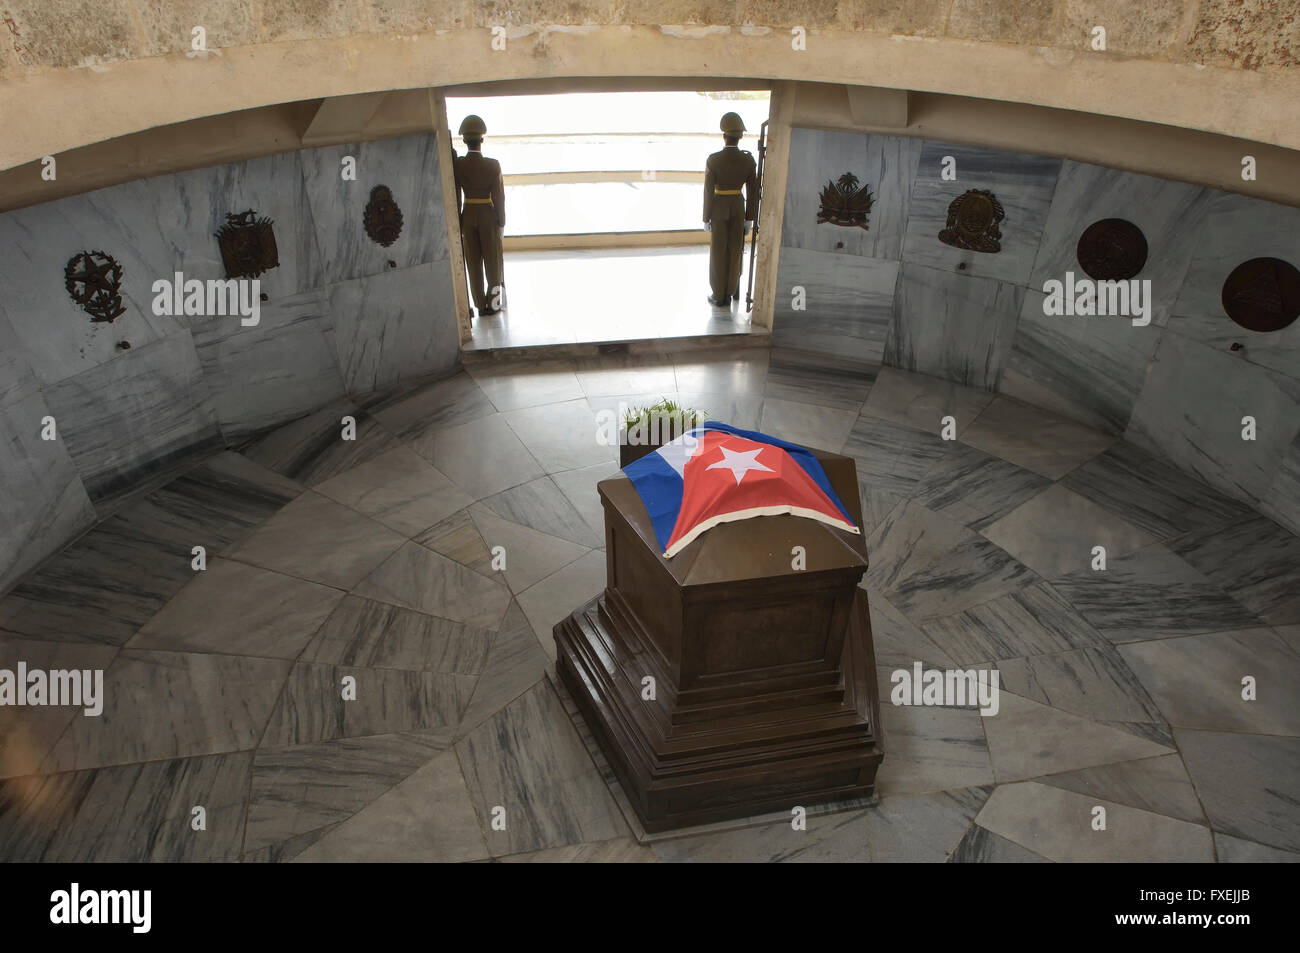 Soldiers guarding the mausoleum of Jose Marti, Cementerio Santa Ifigenia, Santiago de Cuba, Cuba Stock Photo